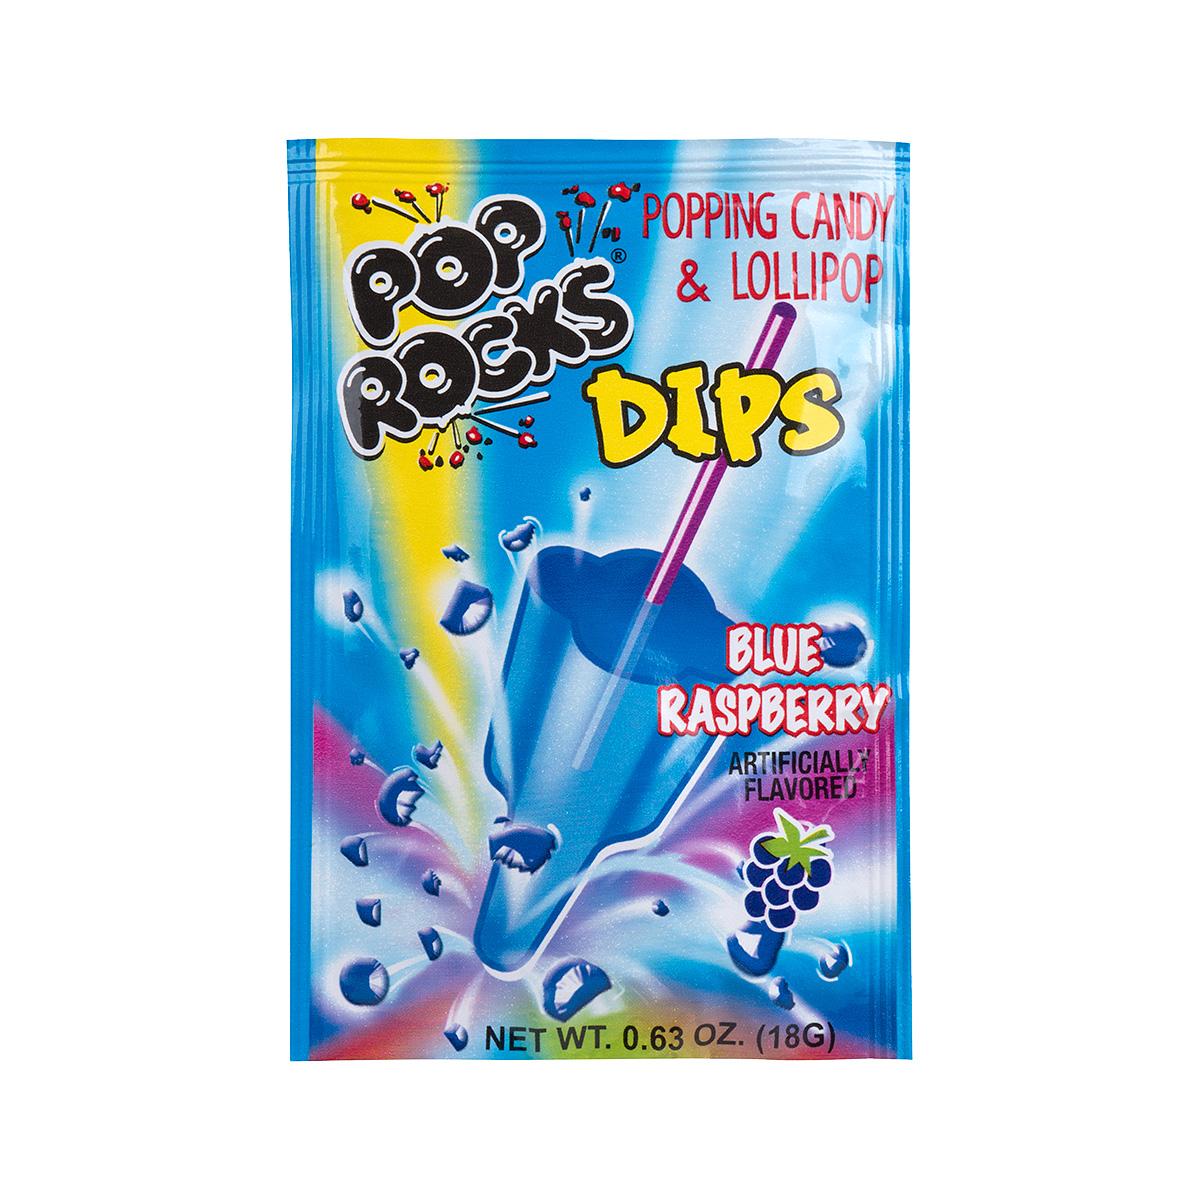  Blue Raspberry Pop Rocks Dip Candy